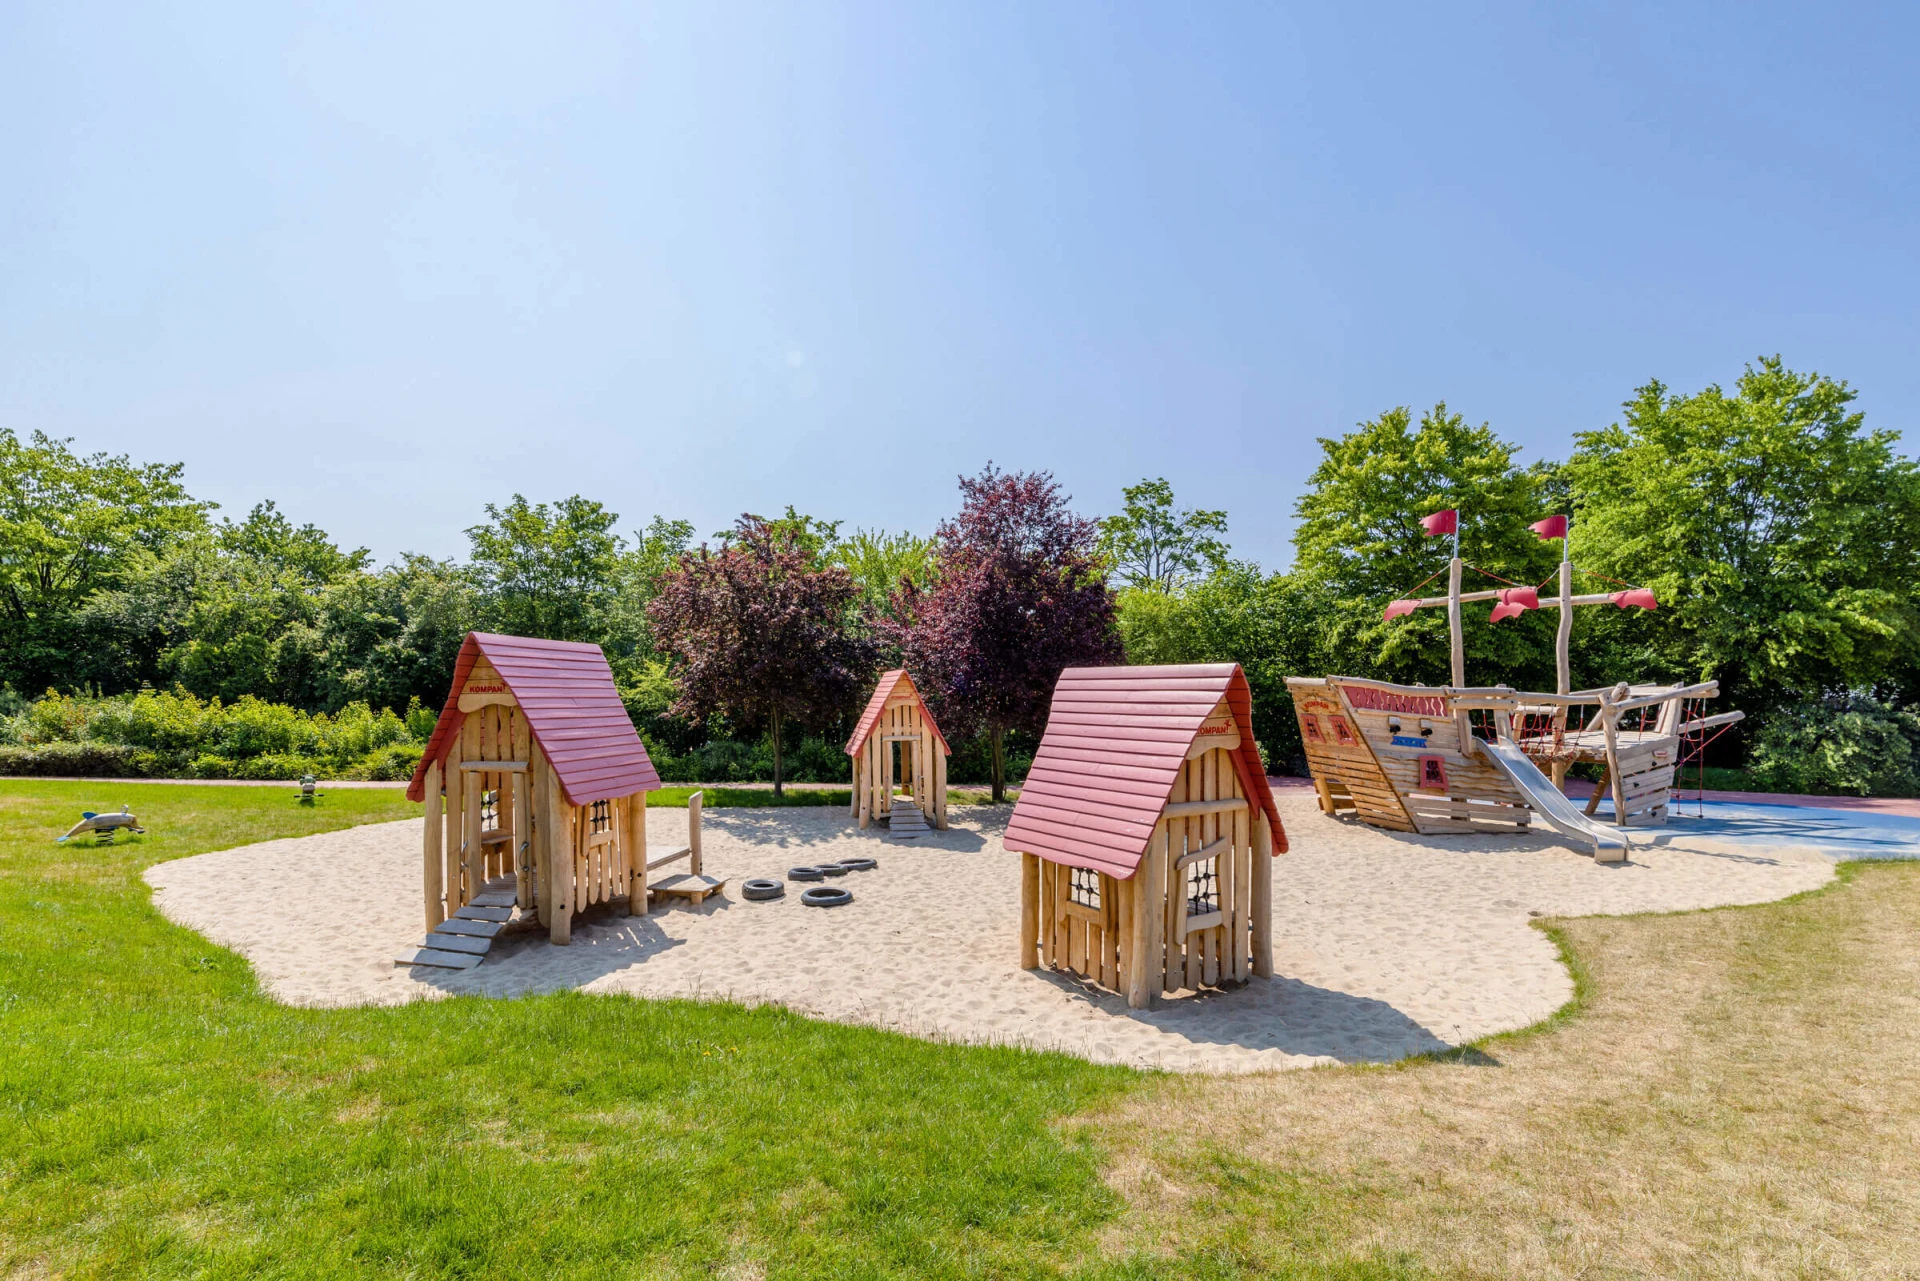 Holzspielplatz in einem Kindergarten mit kommerziellen Spielhäusern und Holzschiff